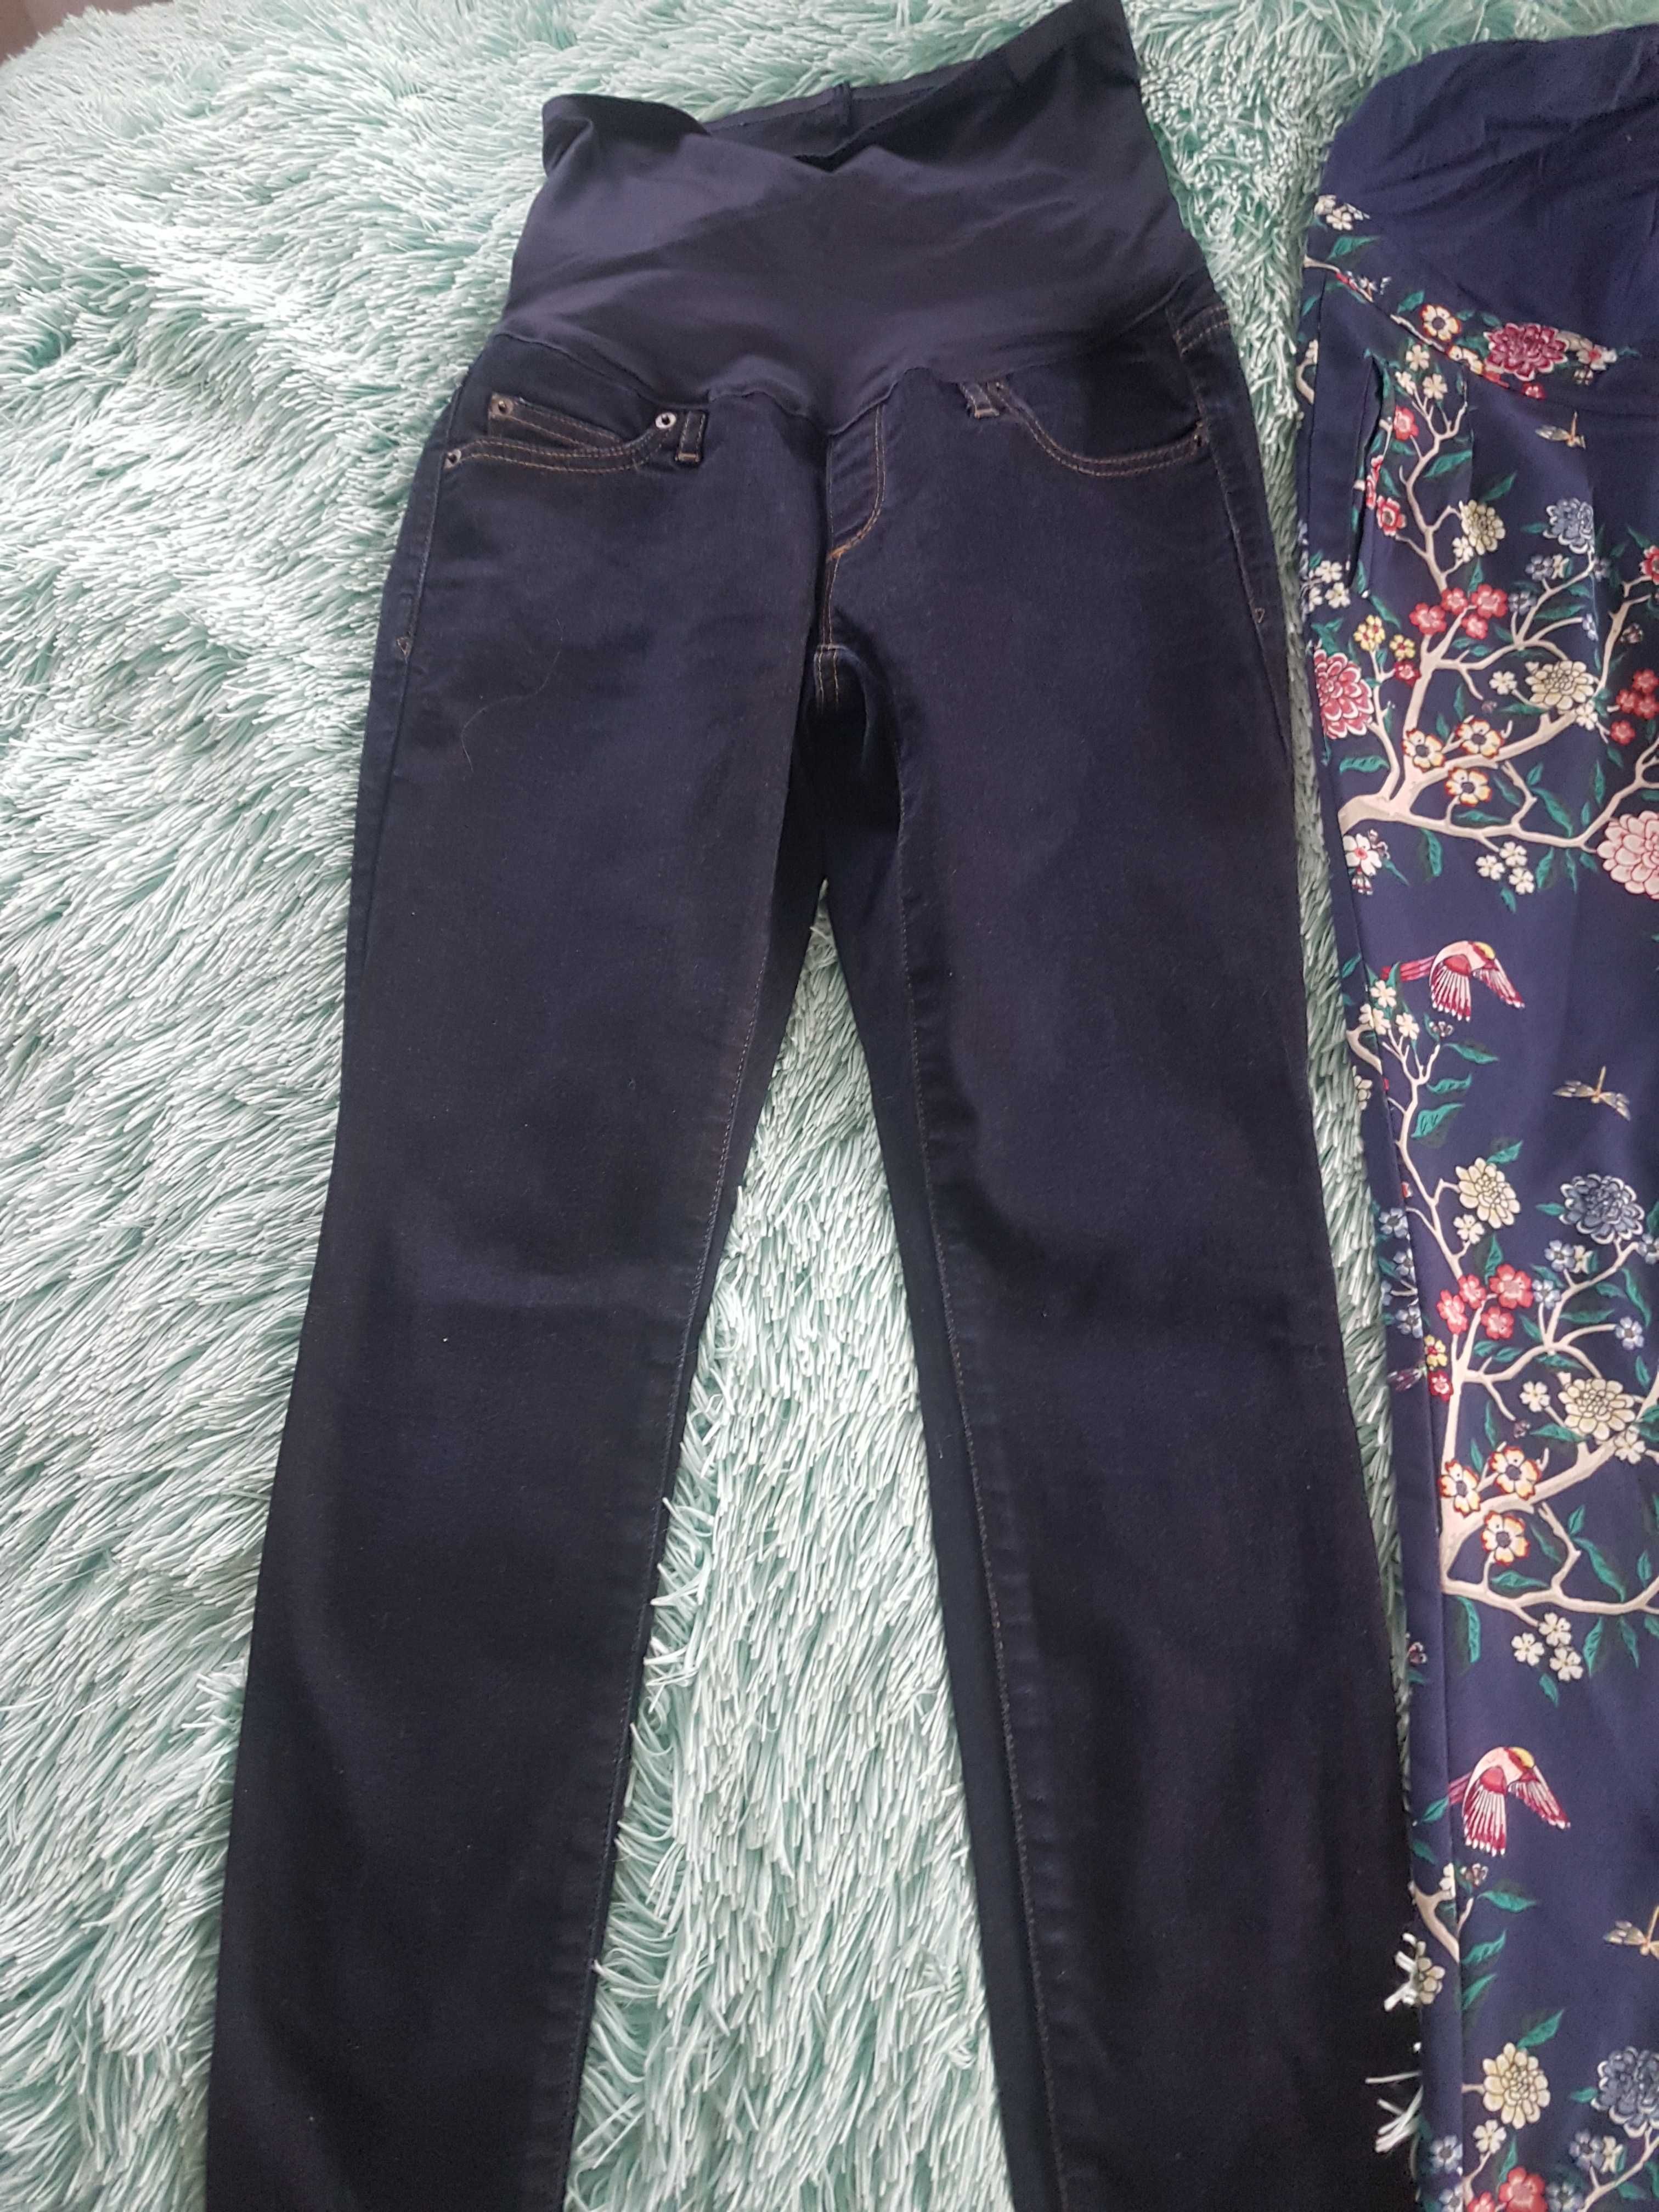 Spodnie ciążowe jeans firmy Gap rozmiar 34